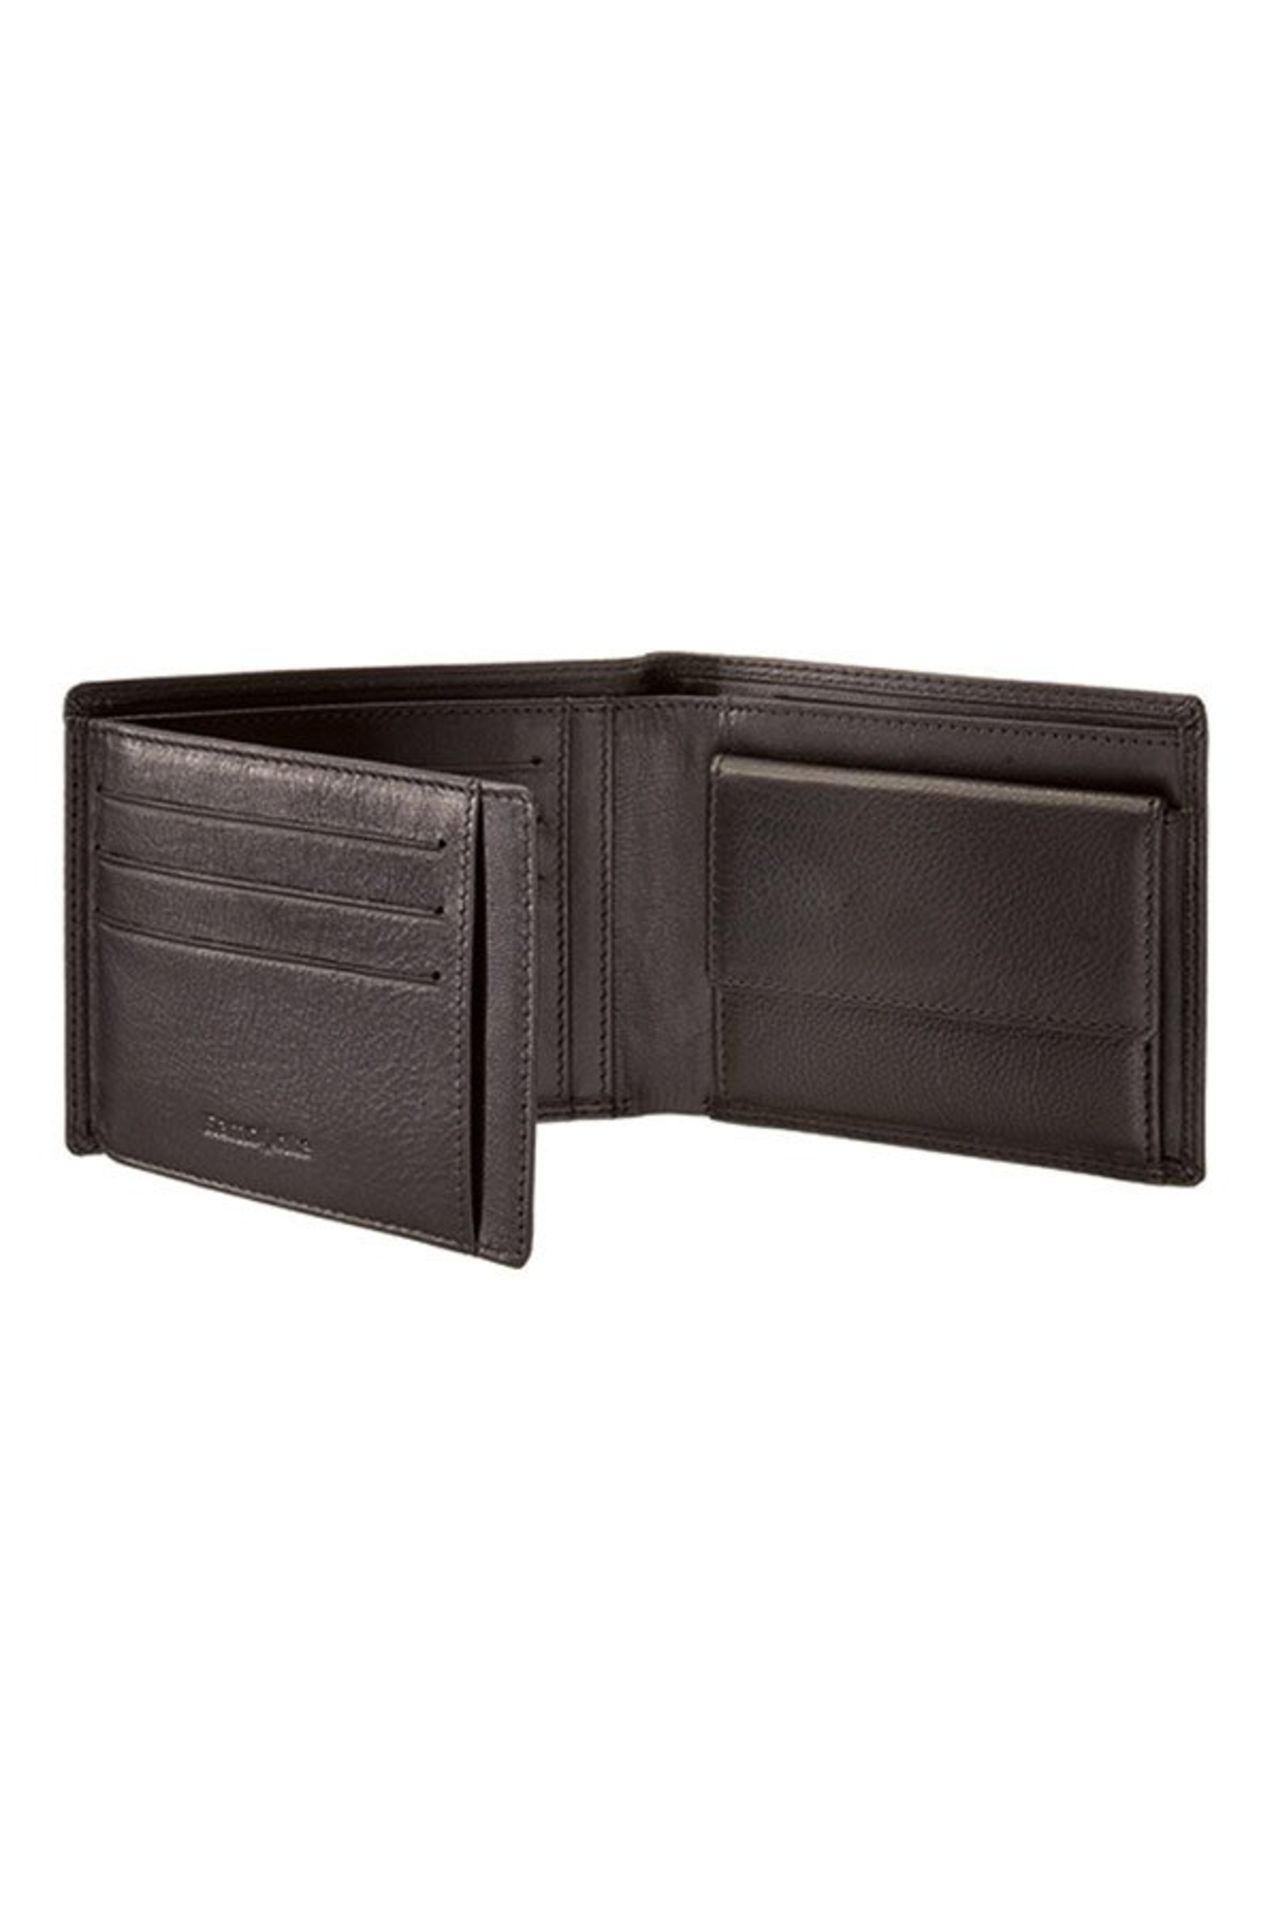 V *TRADE QTY* Brand New Samsonite Gents Black Leather Wallet - 3 Credit Card Slots - Zip Pocket